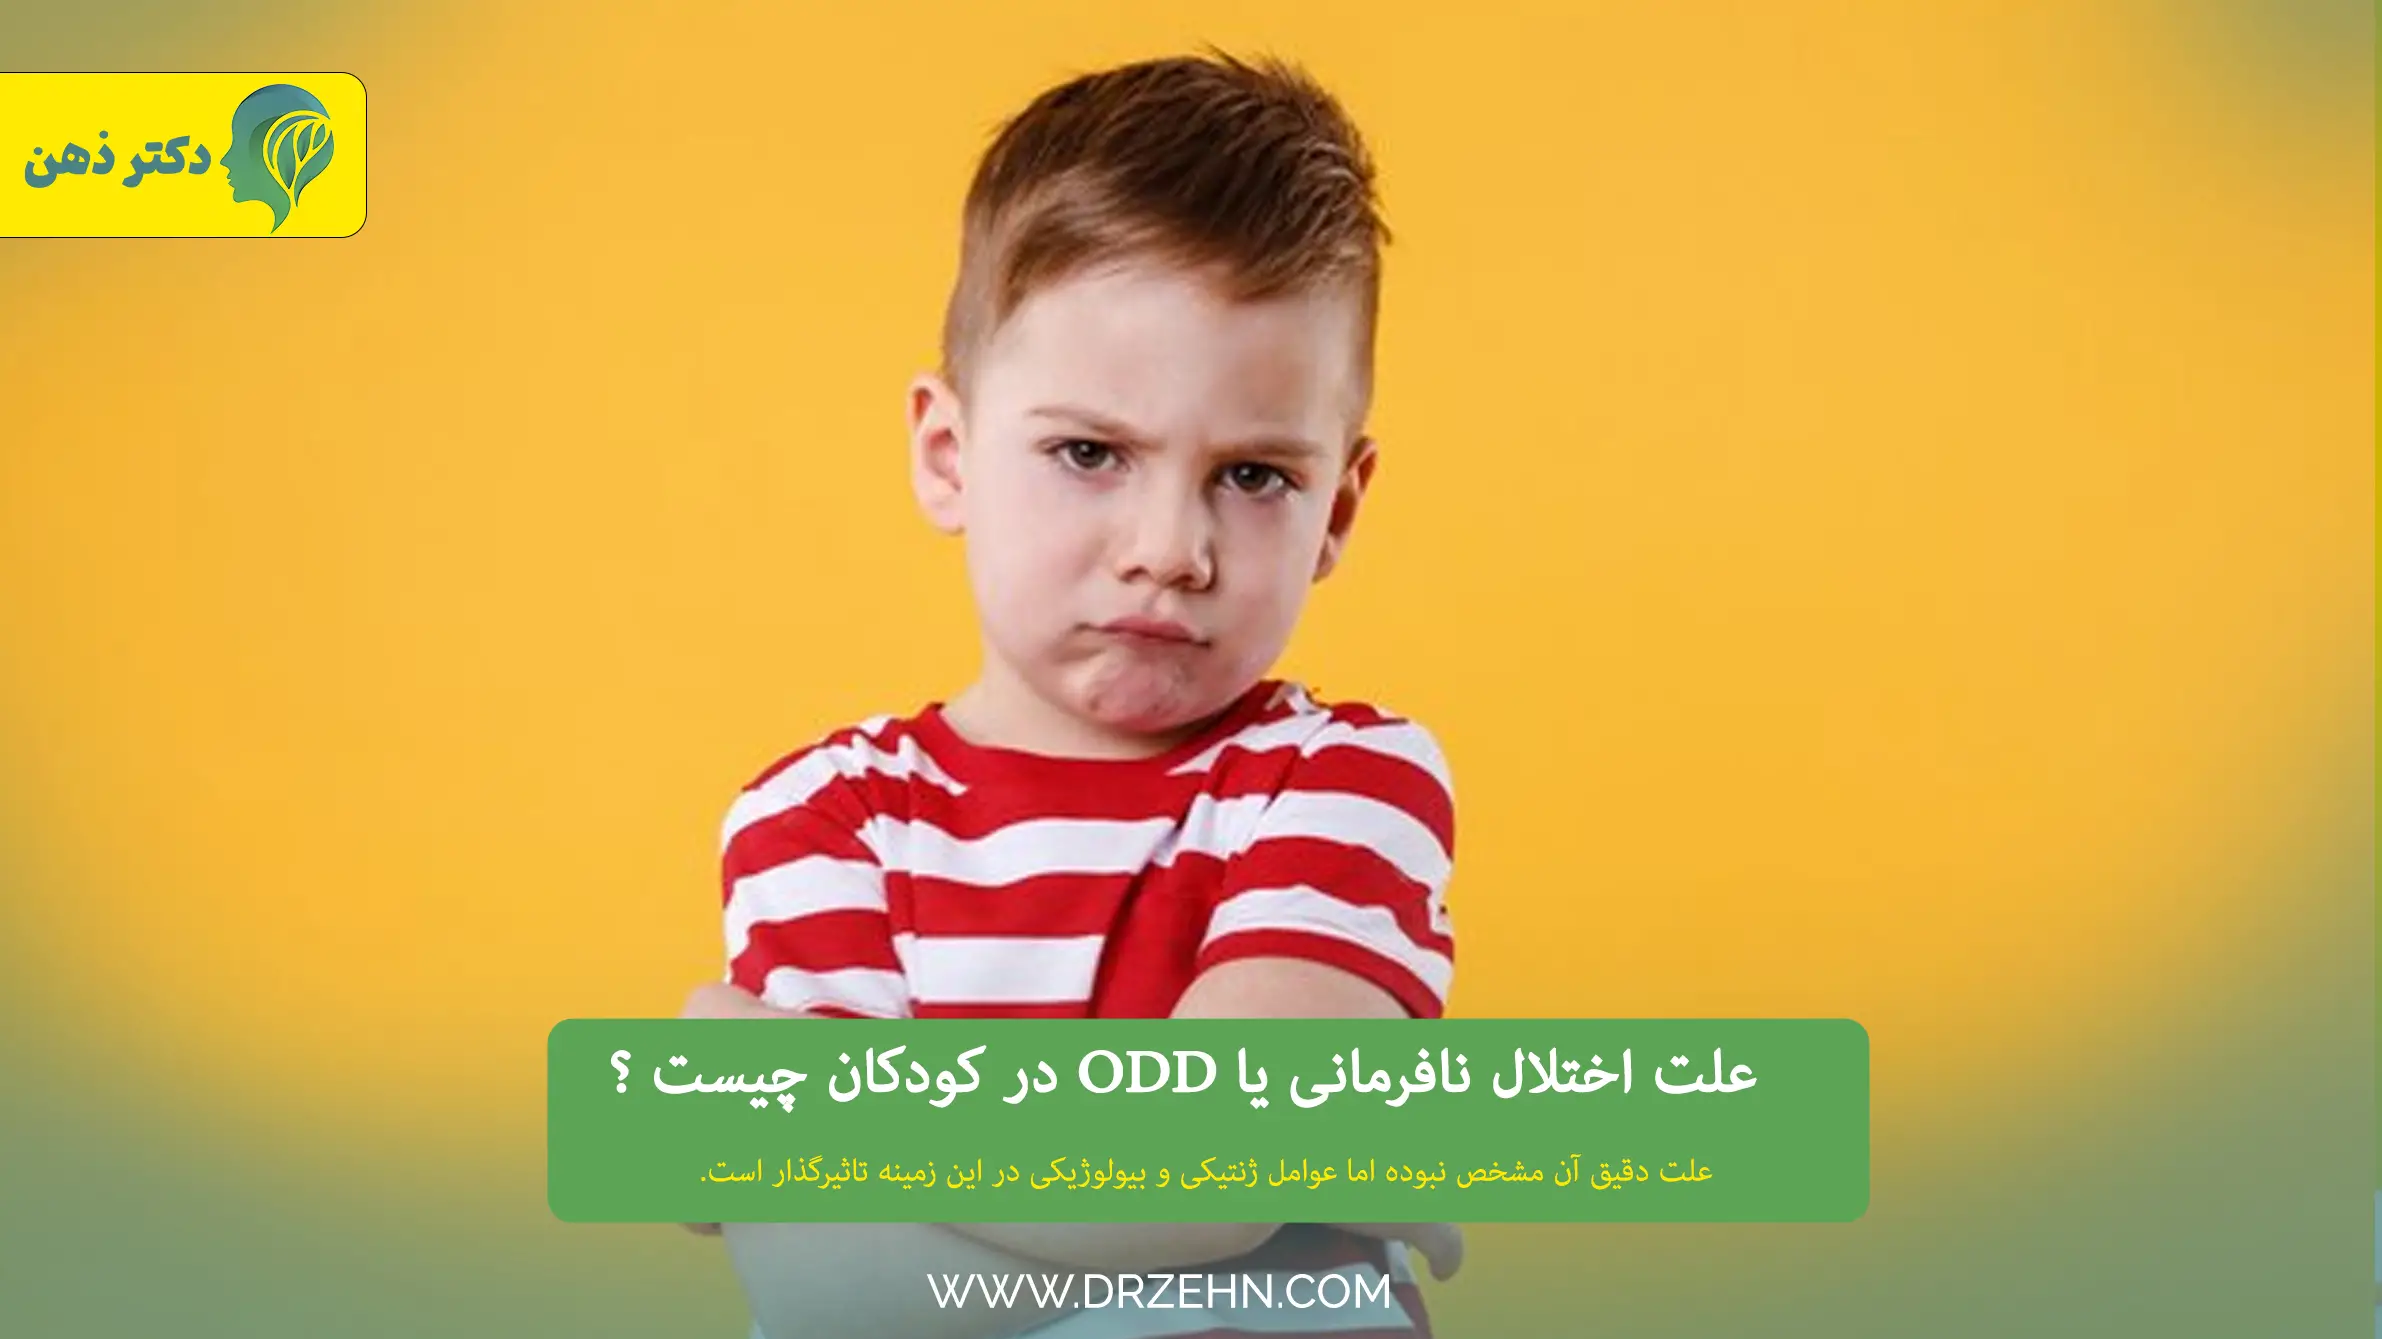 علت ODD یا اختلال نافرمانی در کودکان